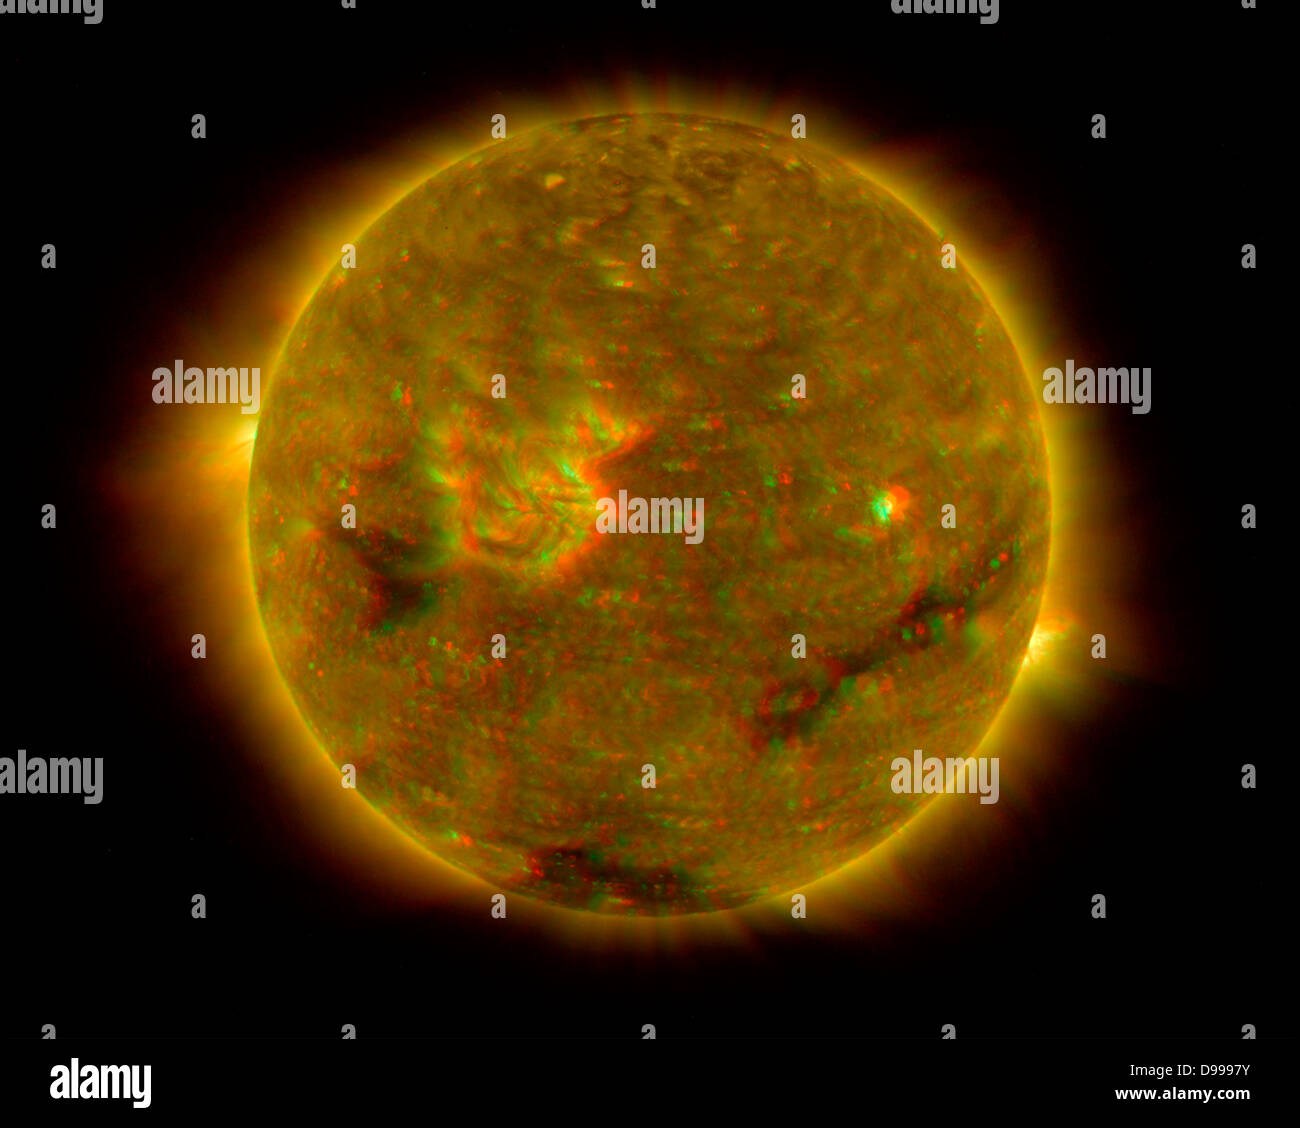 Ein dreidimensionales Bild der Sonne Stereoanlage. Dieses Bild ist ein Verbundwerkstoff aus dem linken und dem rechten Auge Farbe bildpaare durch den SECCHI Extremen Ultraviolett Bildeinheit aufgenommen. Stockfoto